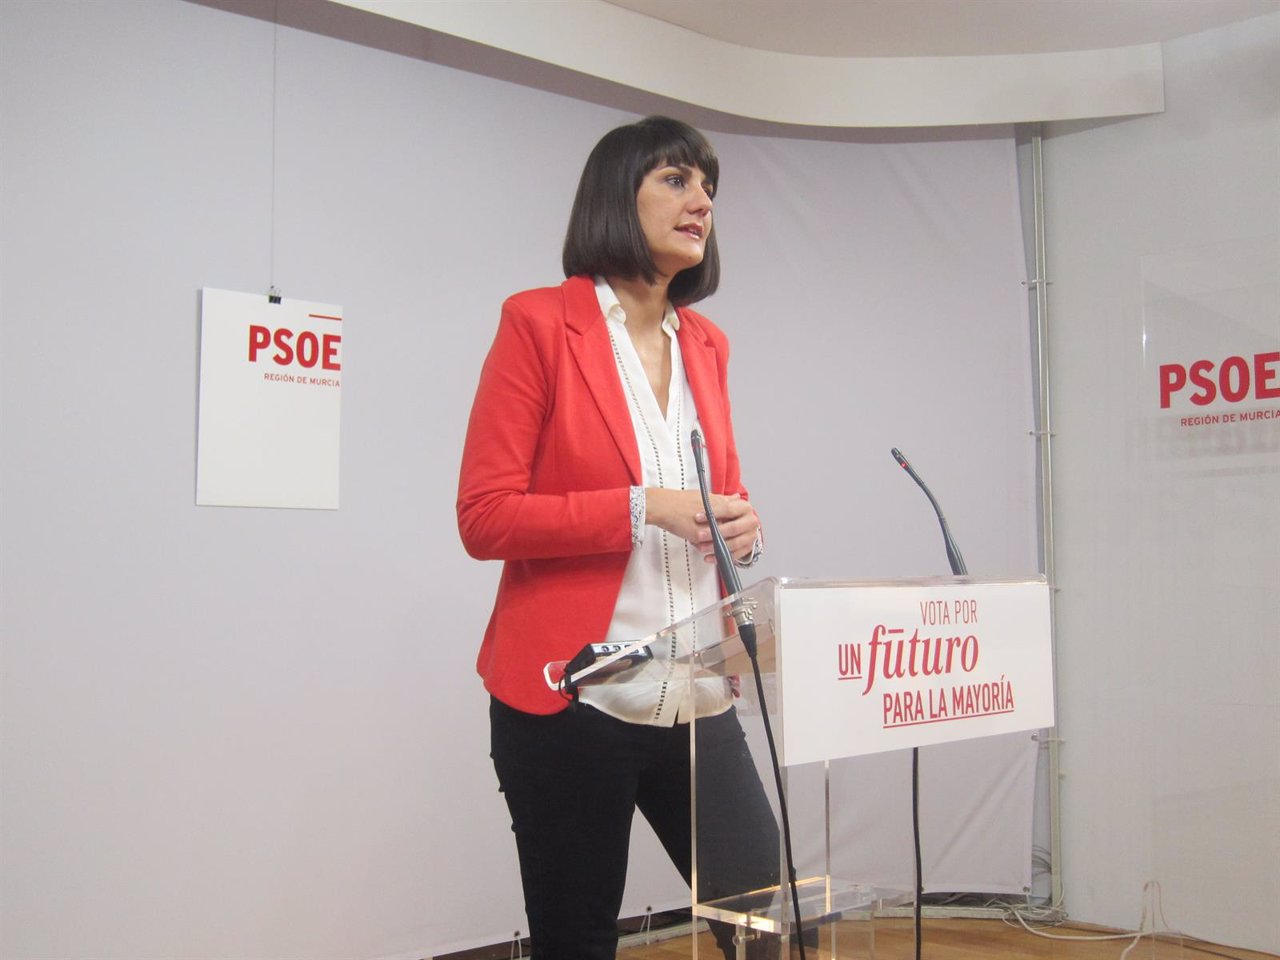 La cabeza de lista del PSOE al Congreso de Murcia, María González Veracruz